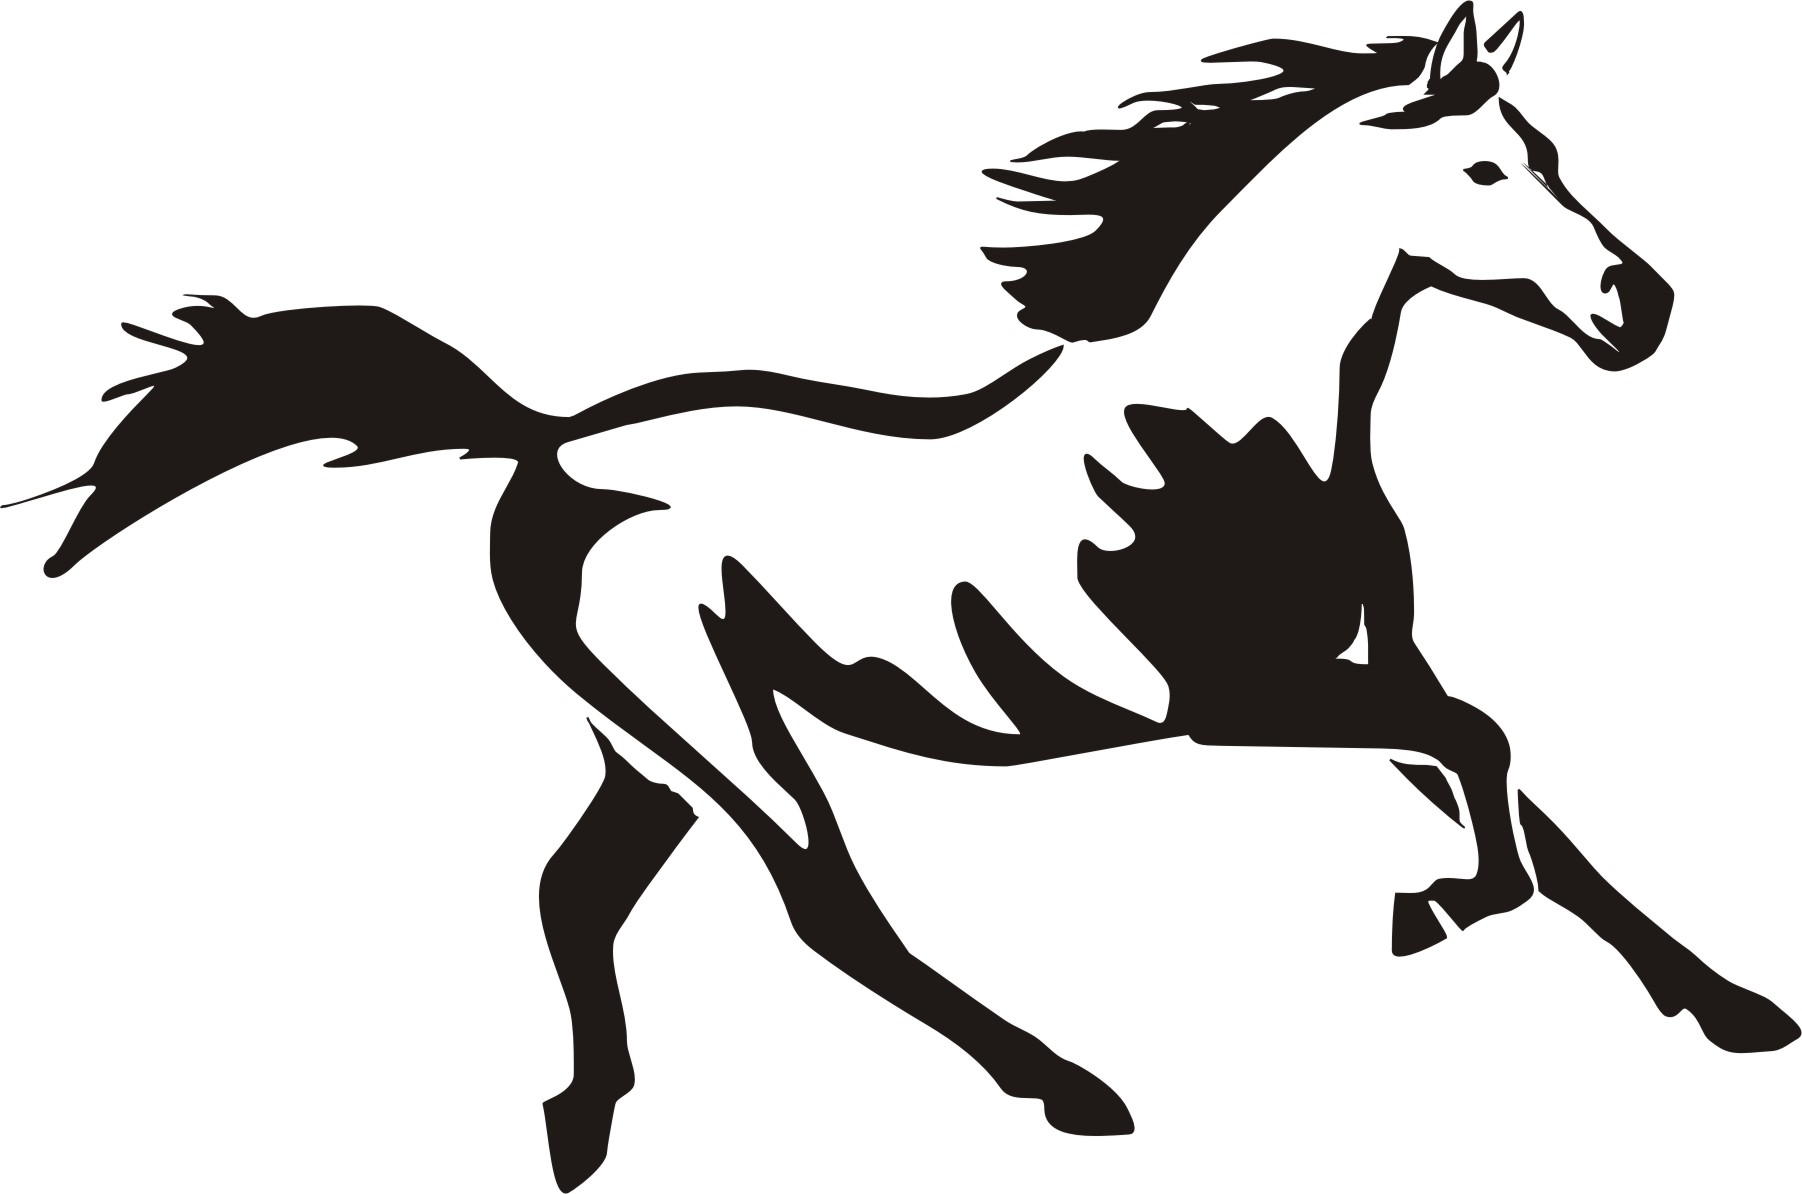 Horse head clip art vectors download free vector image